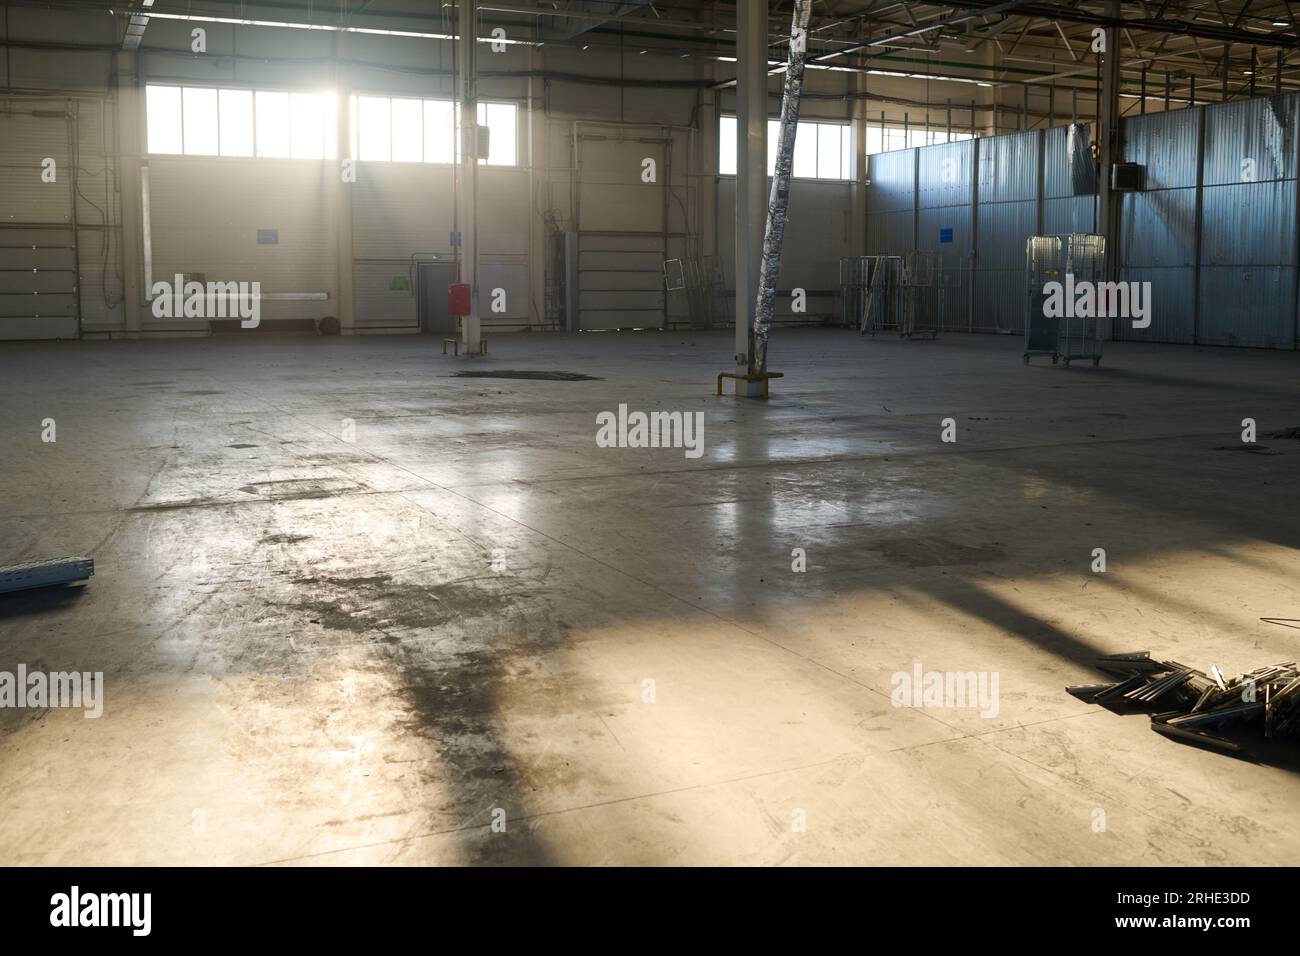 Sonnenbeleuchtete Ecke einer geräumigen Werkstatt oder eines Lagers einer Industrieanlage oder Fabrik mit langen Fenstern und verschiedenen metallischen Konstruktionen Stockfoto